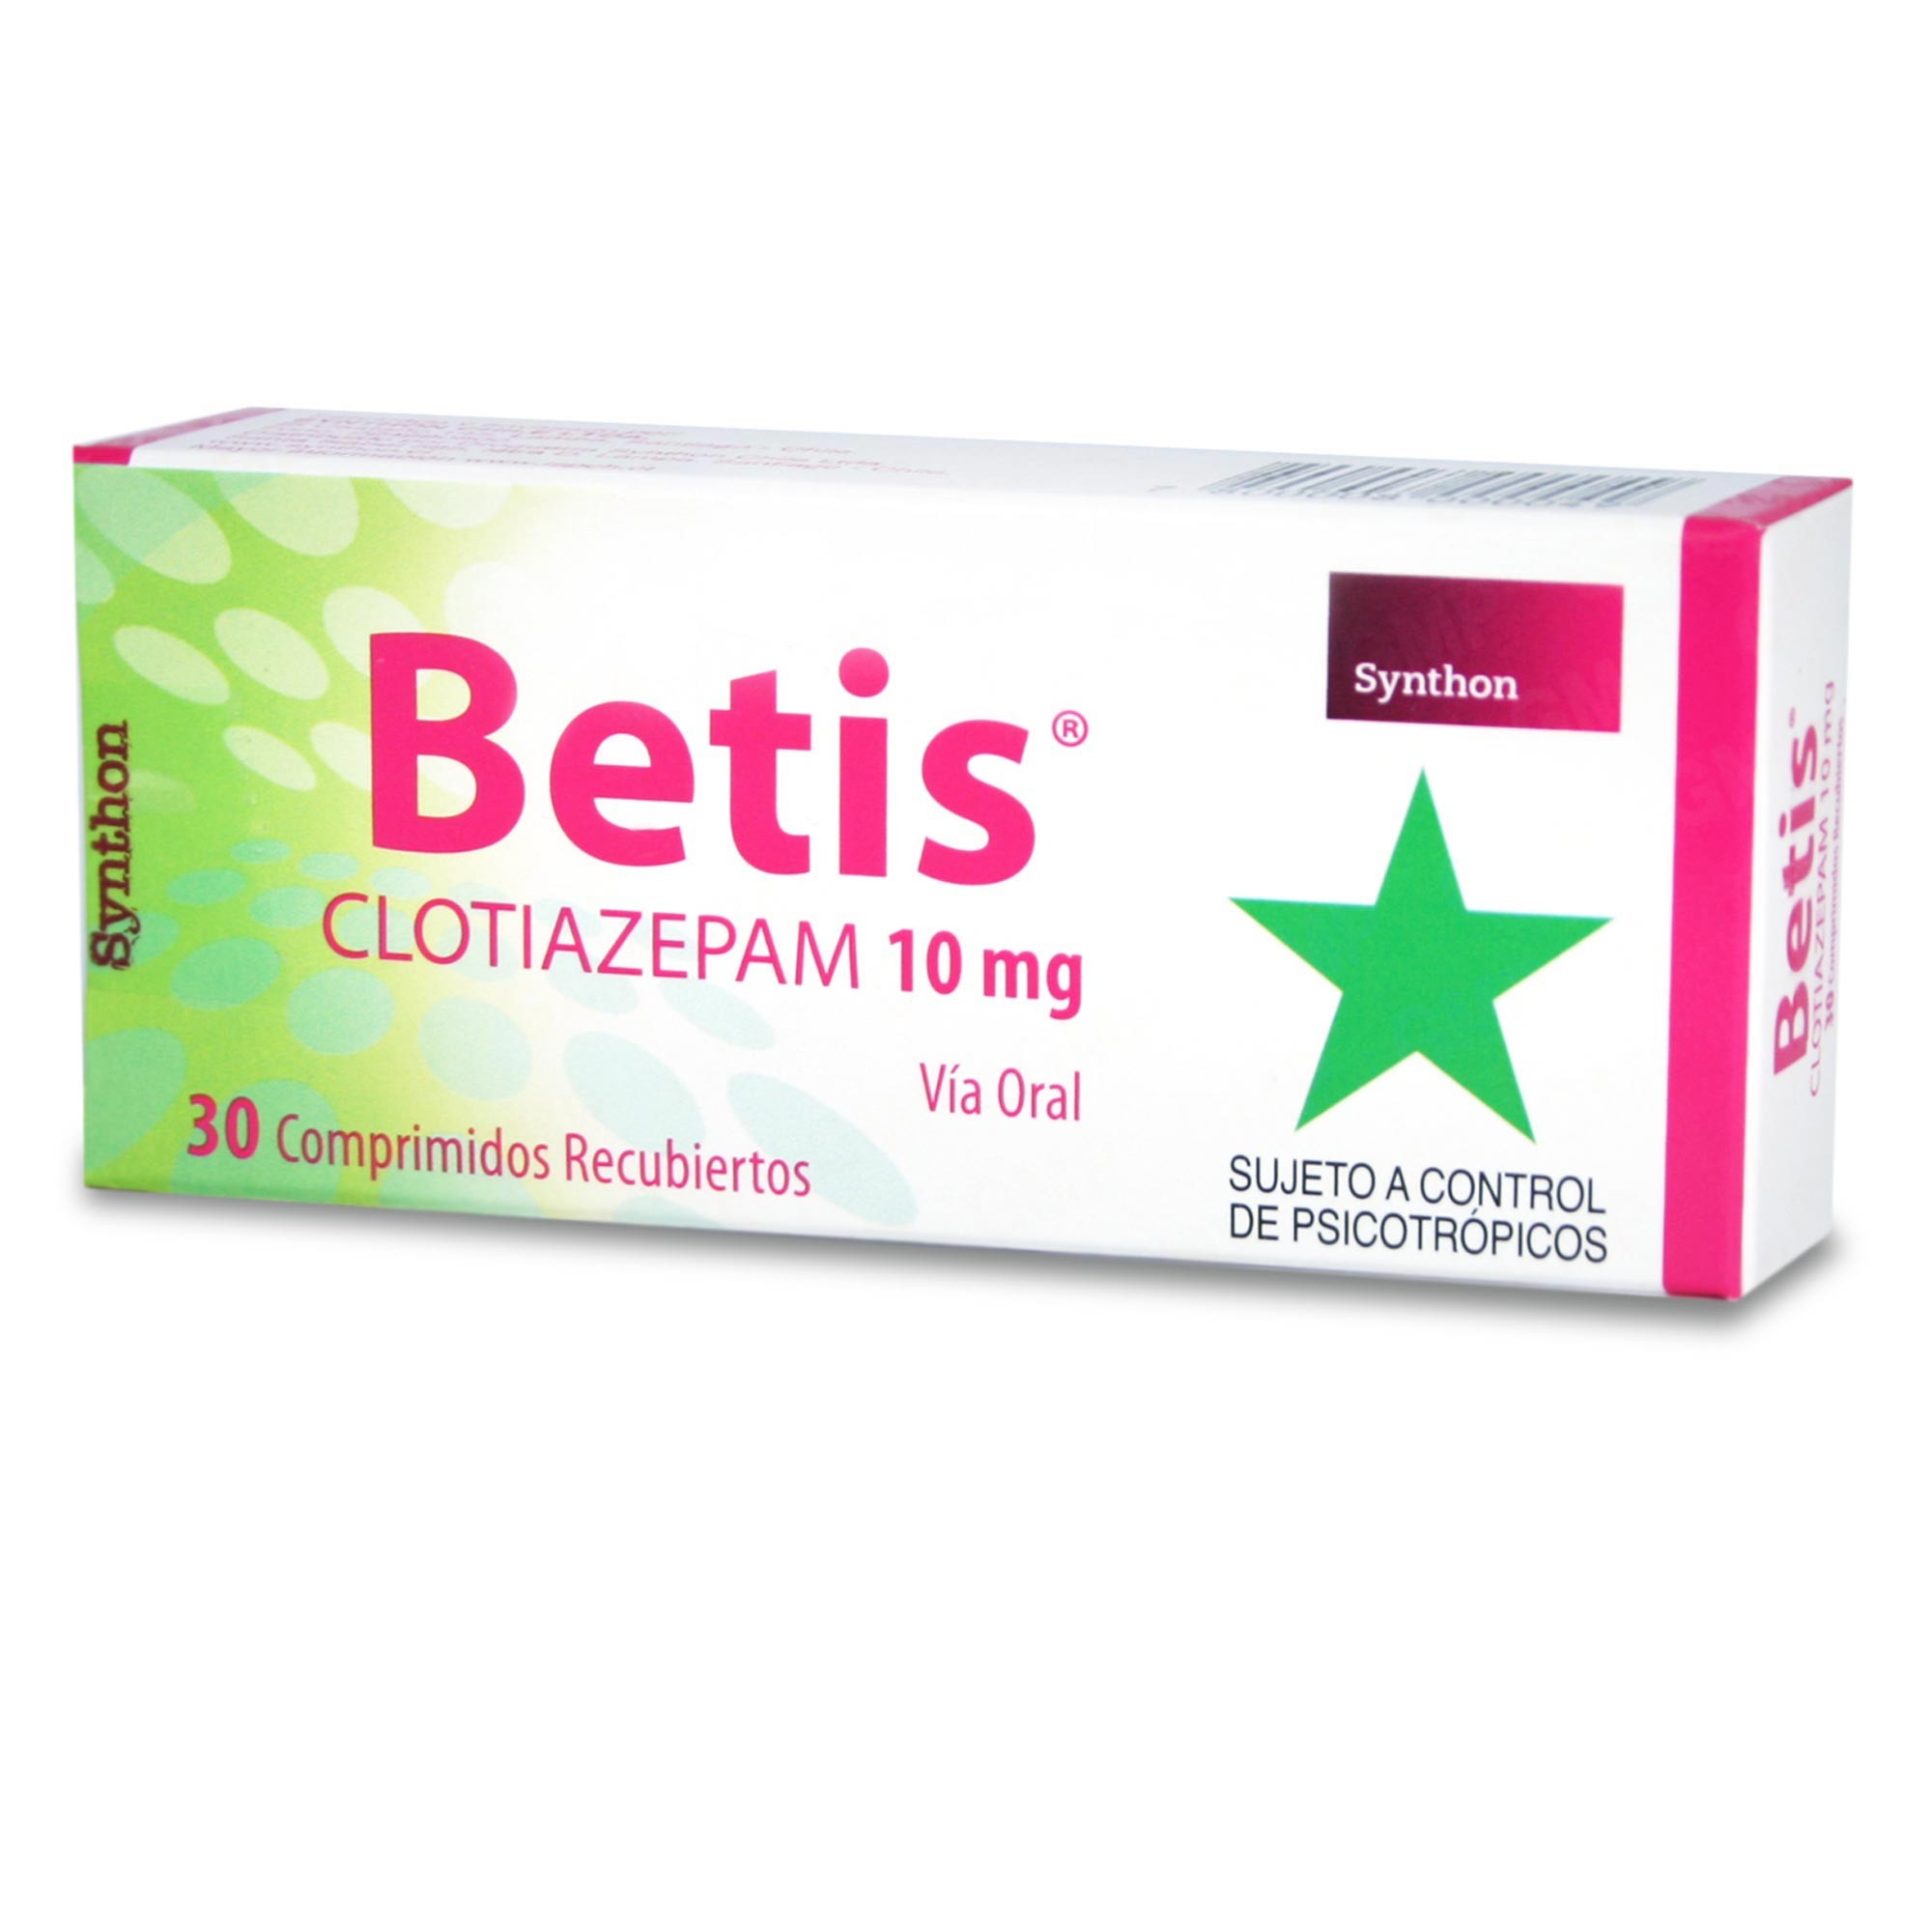 267085-betis-comprimido-recubierto-30-unidades-clotiazepam-10-mg.jpg